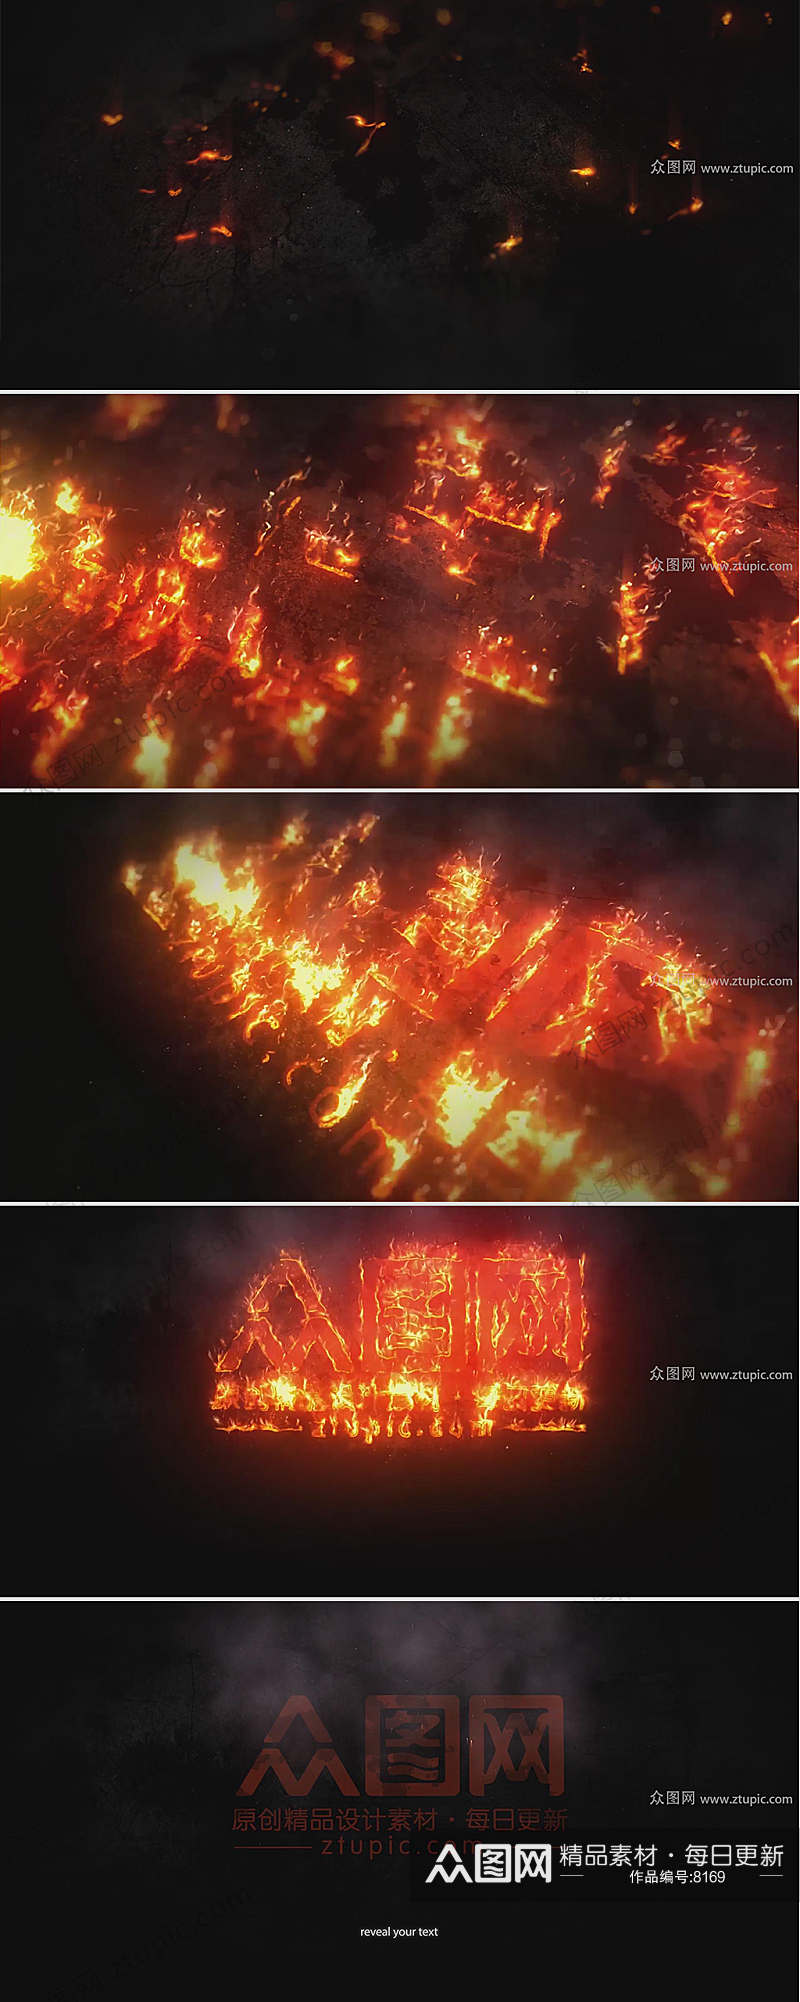 火焰沿路径燃烧LOGO动画演绎素材